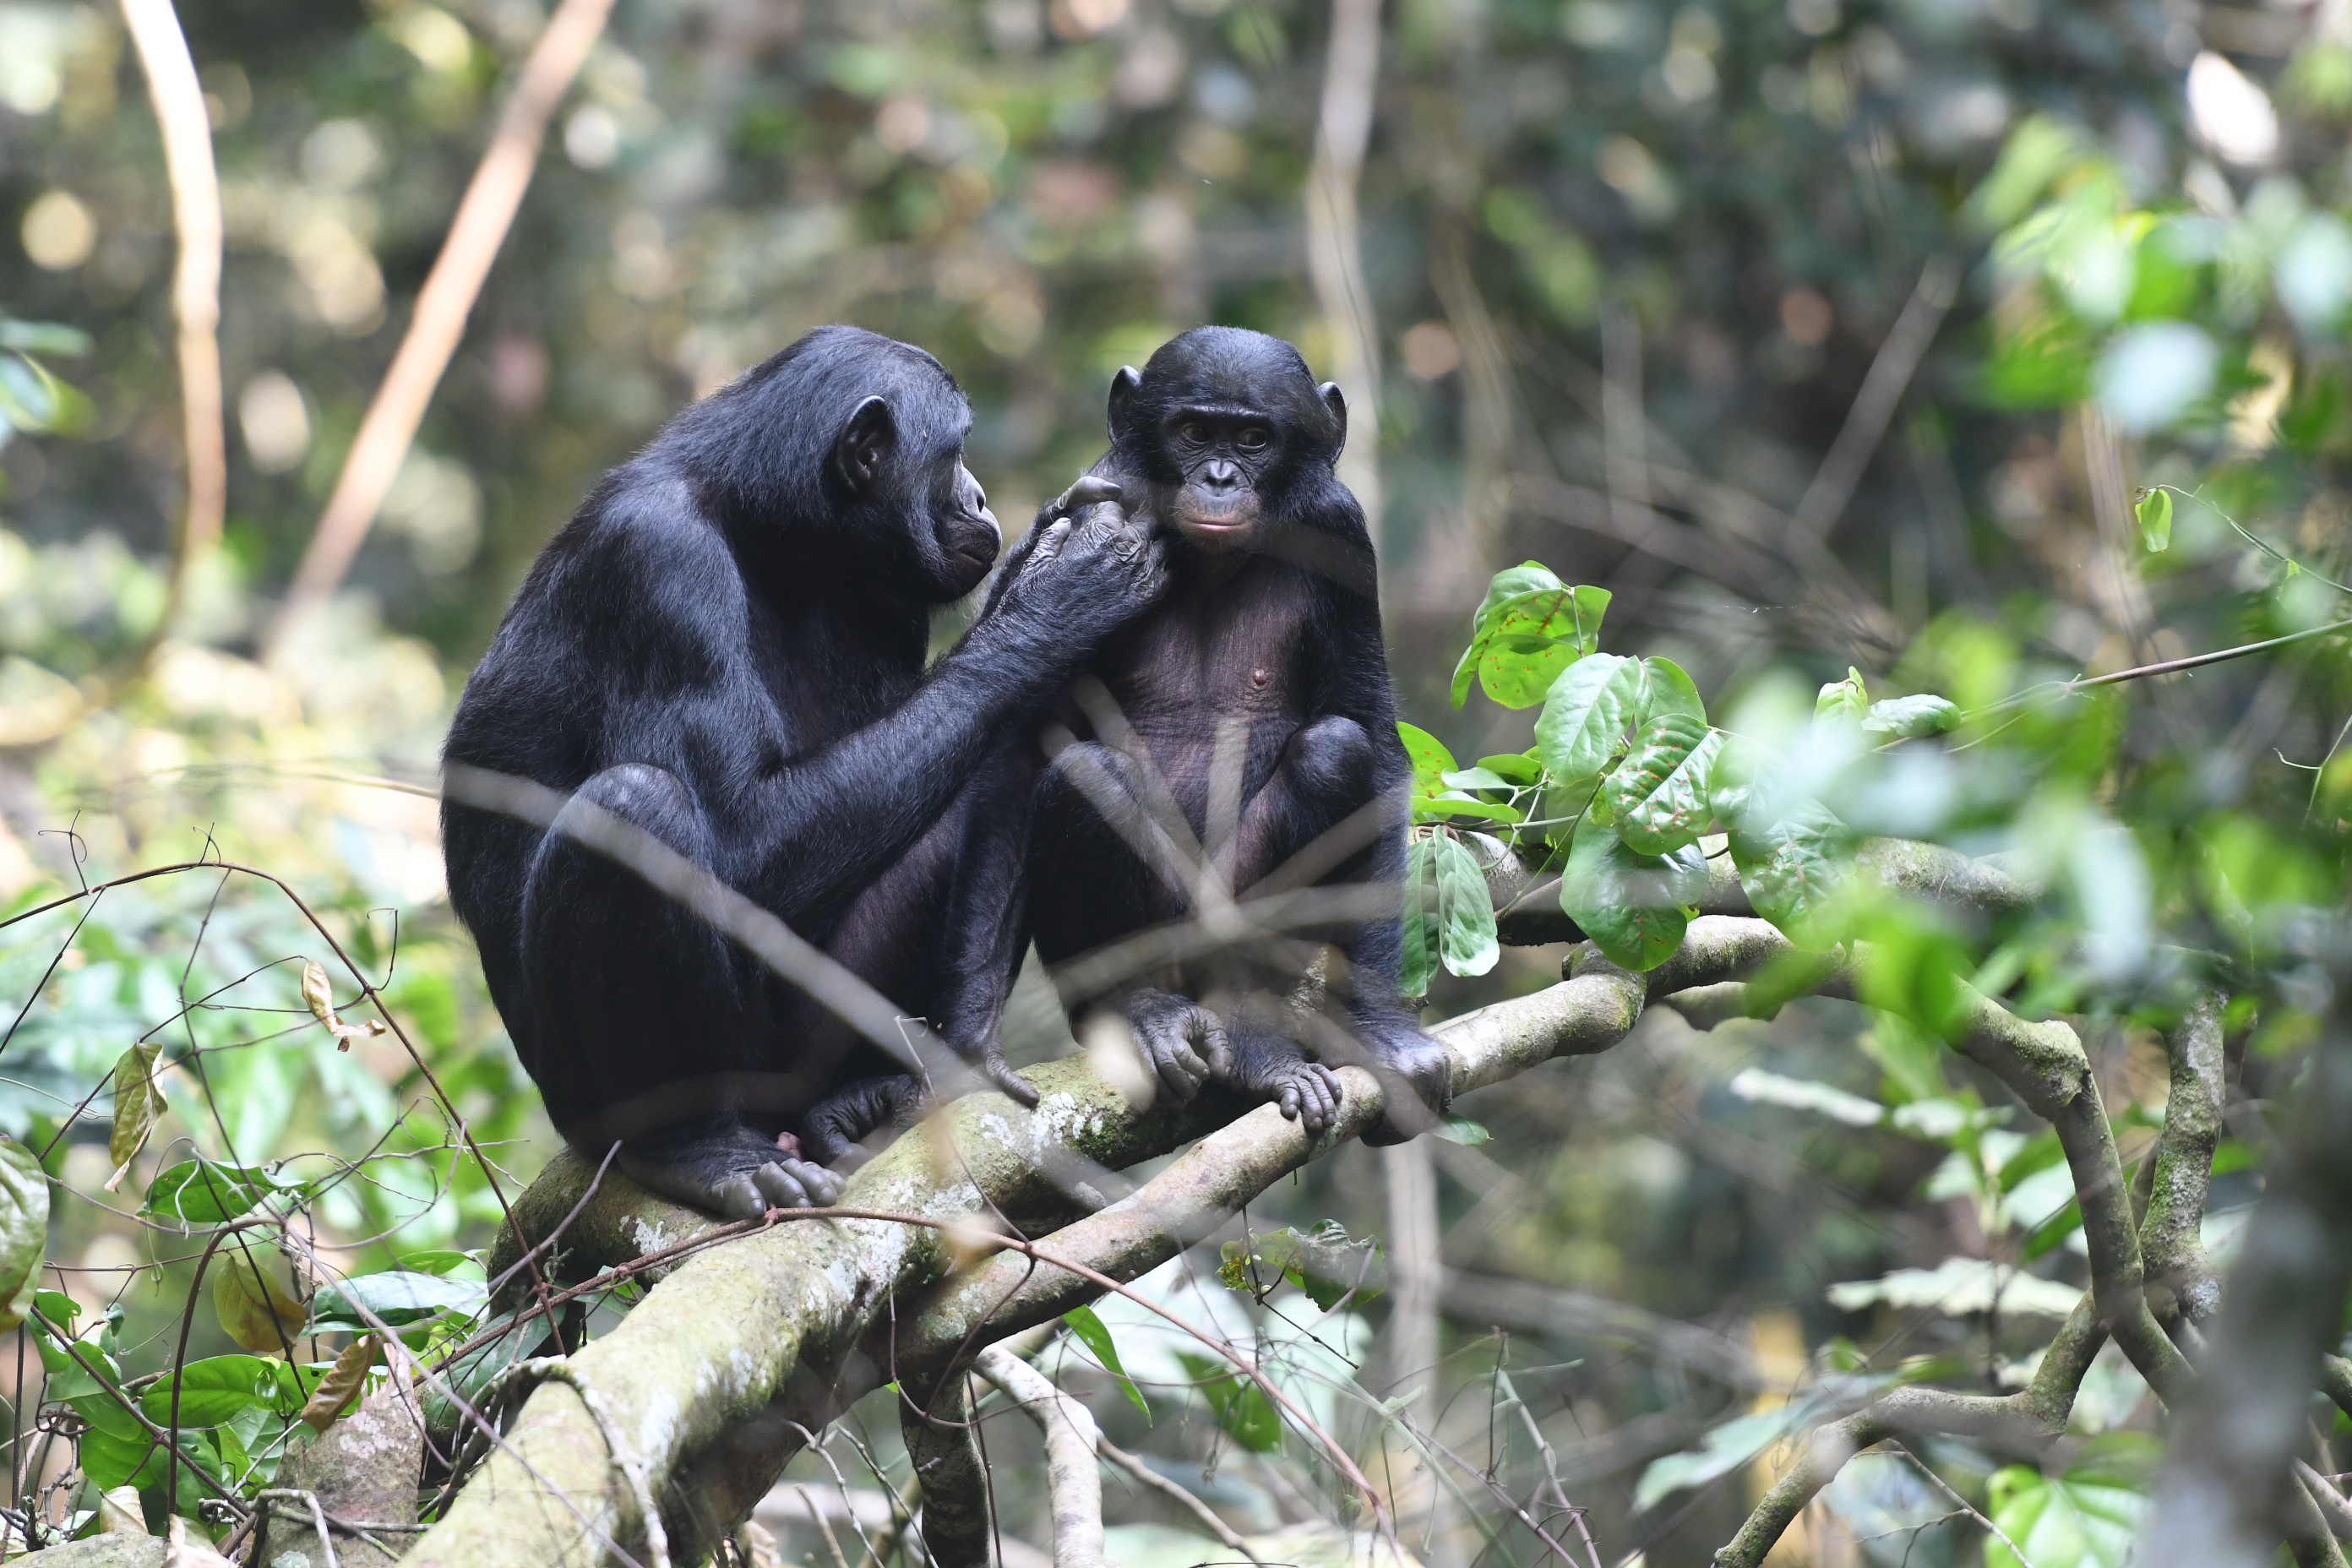 Kiderült, hogy a bonobó-mamák segítenek becsajozni a bonobó-fiúknak, és még a szexet is felügyelik